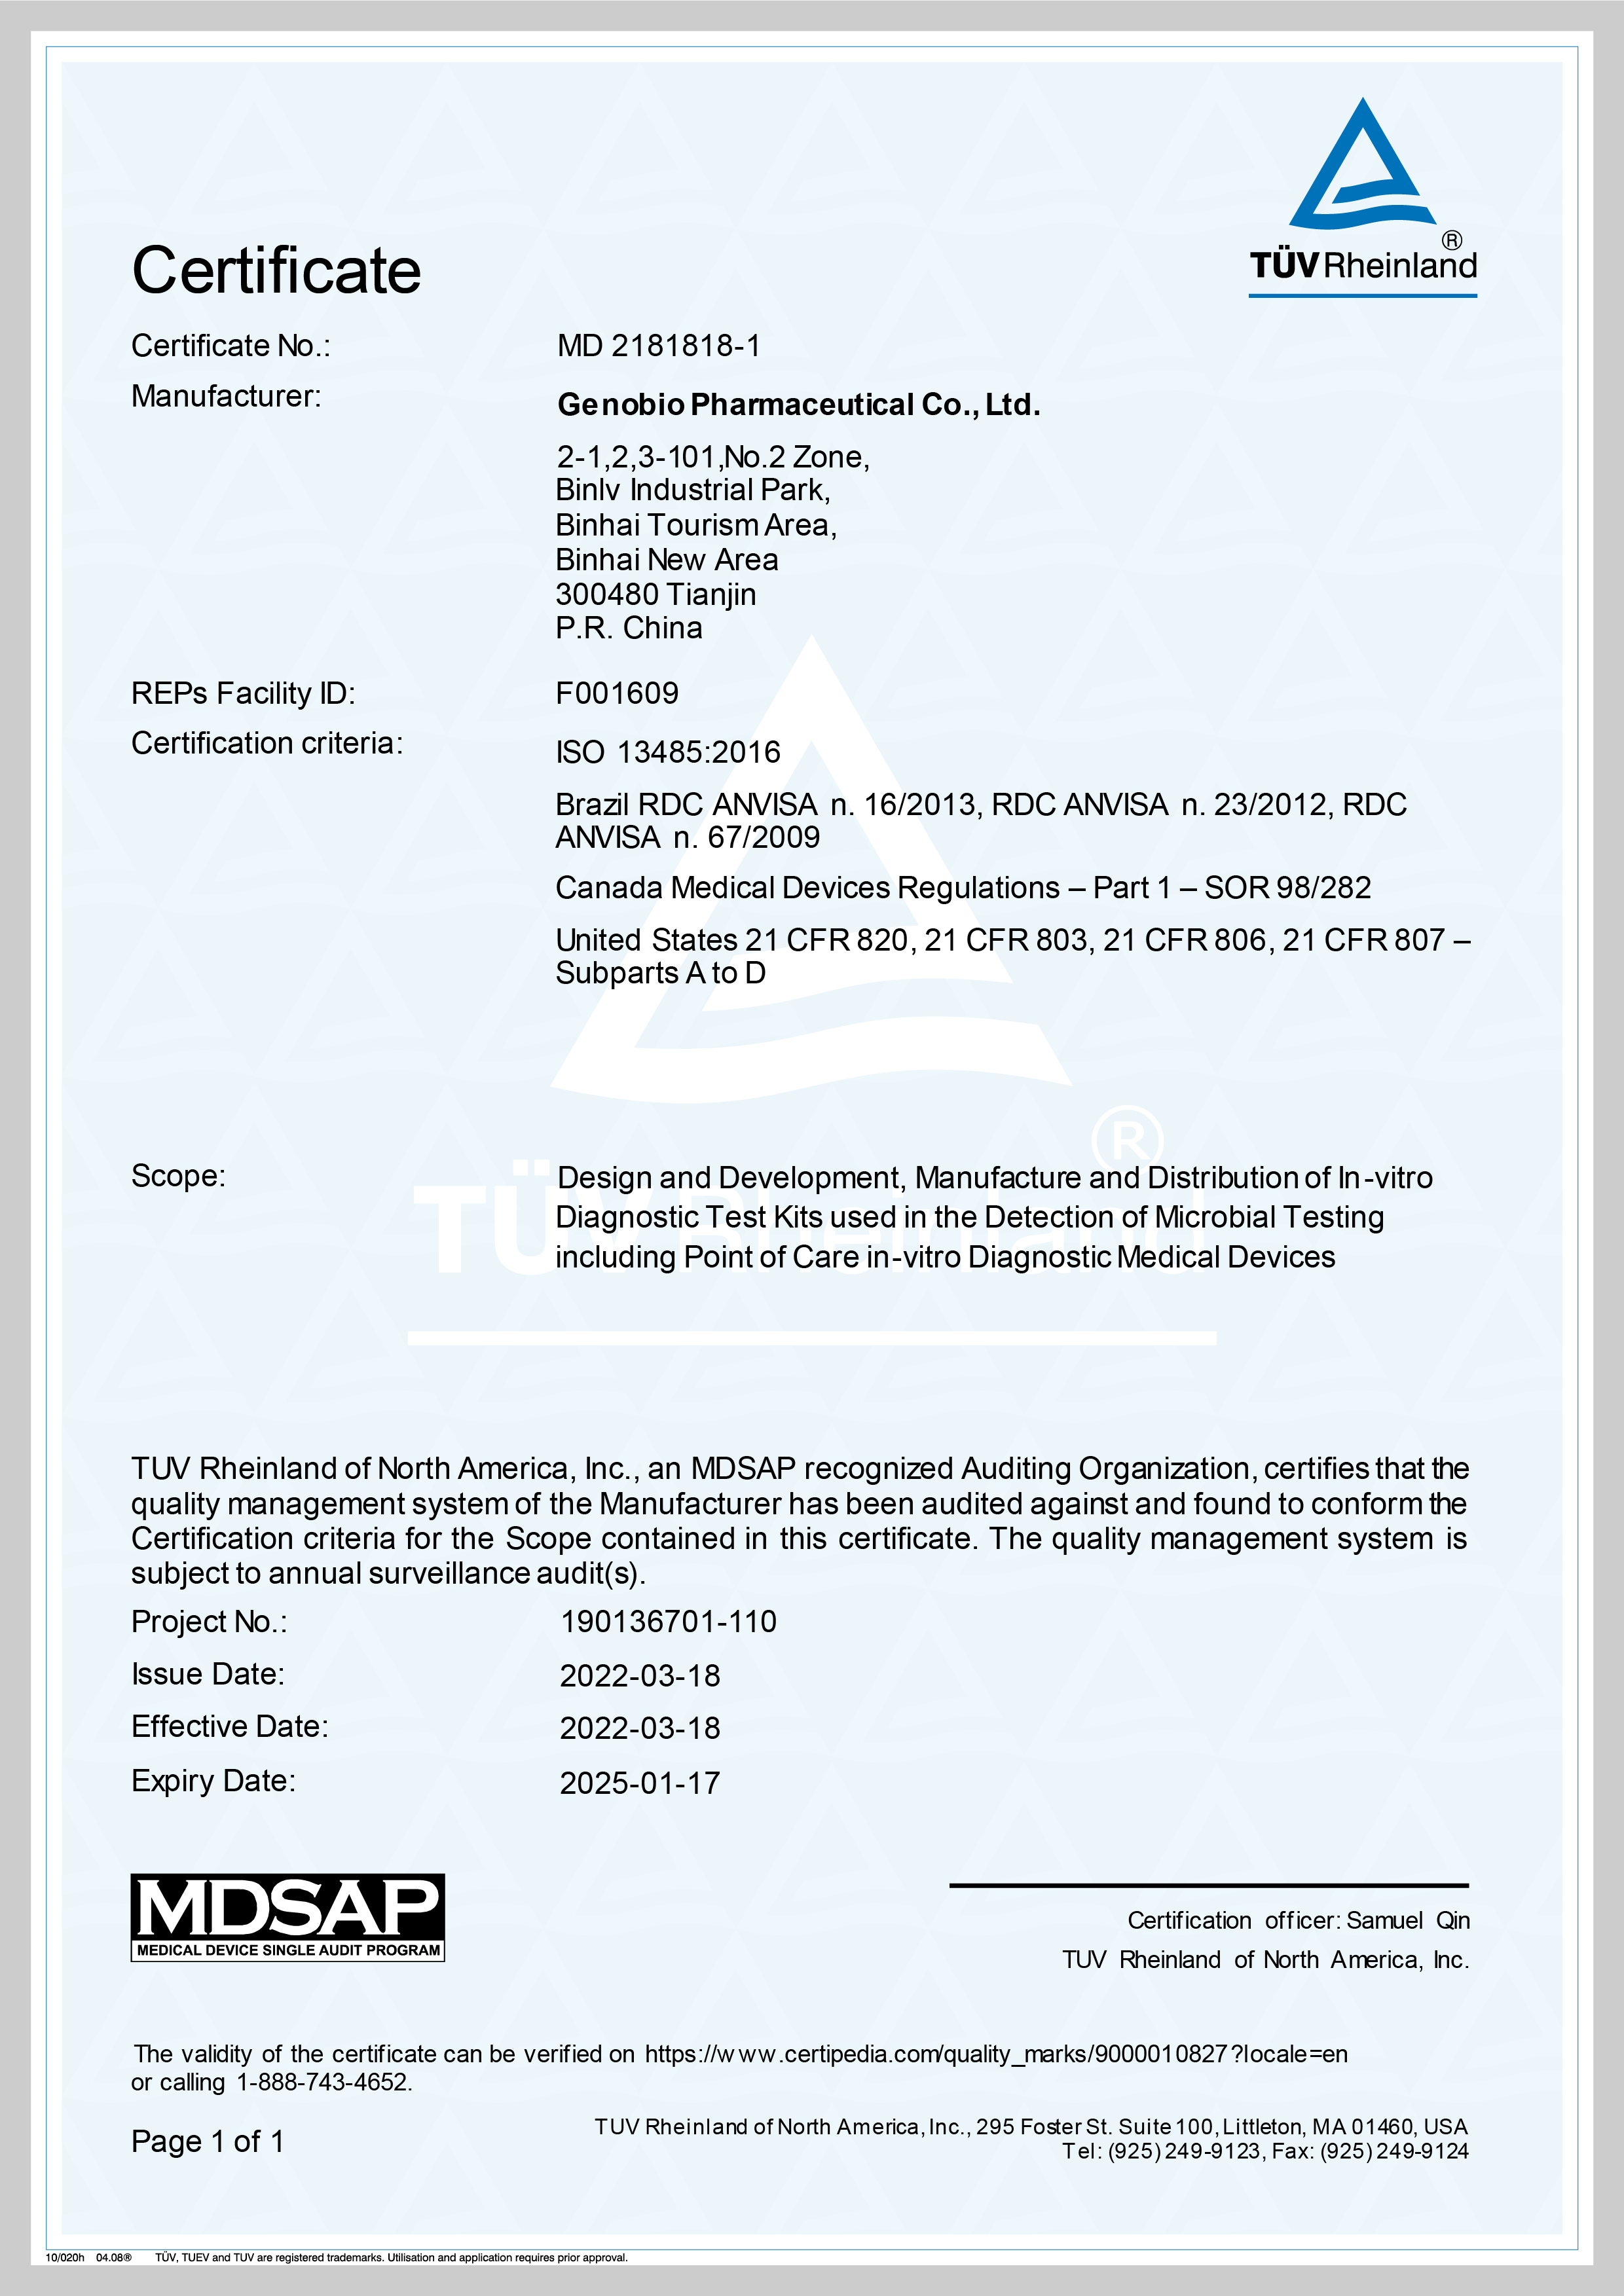 जेनोबियोले MDSAP प्रमाणीकरण प्राप्त गर्‍यो ——चिकित्सा उपकरण निर्माण उद्योगमा उच्चतम नियामक मानक